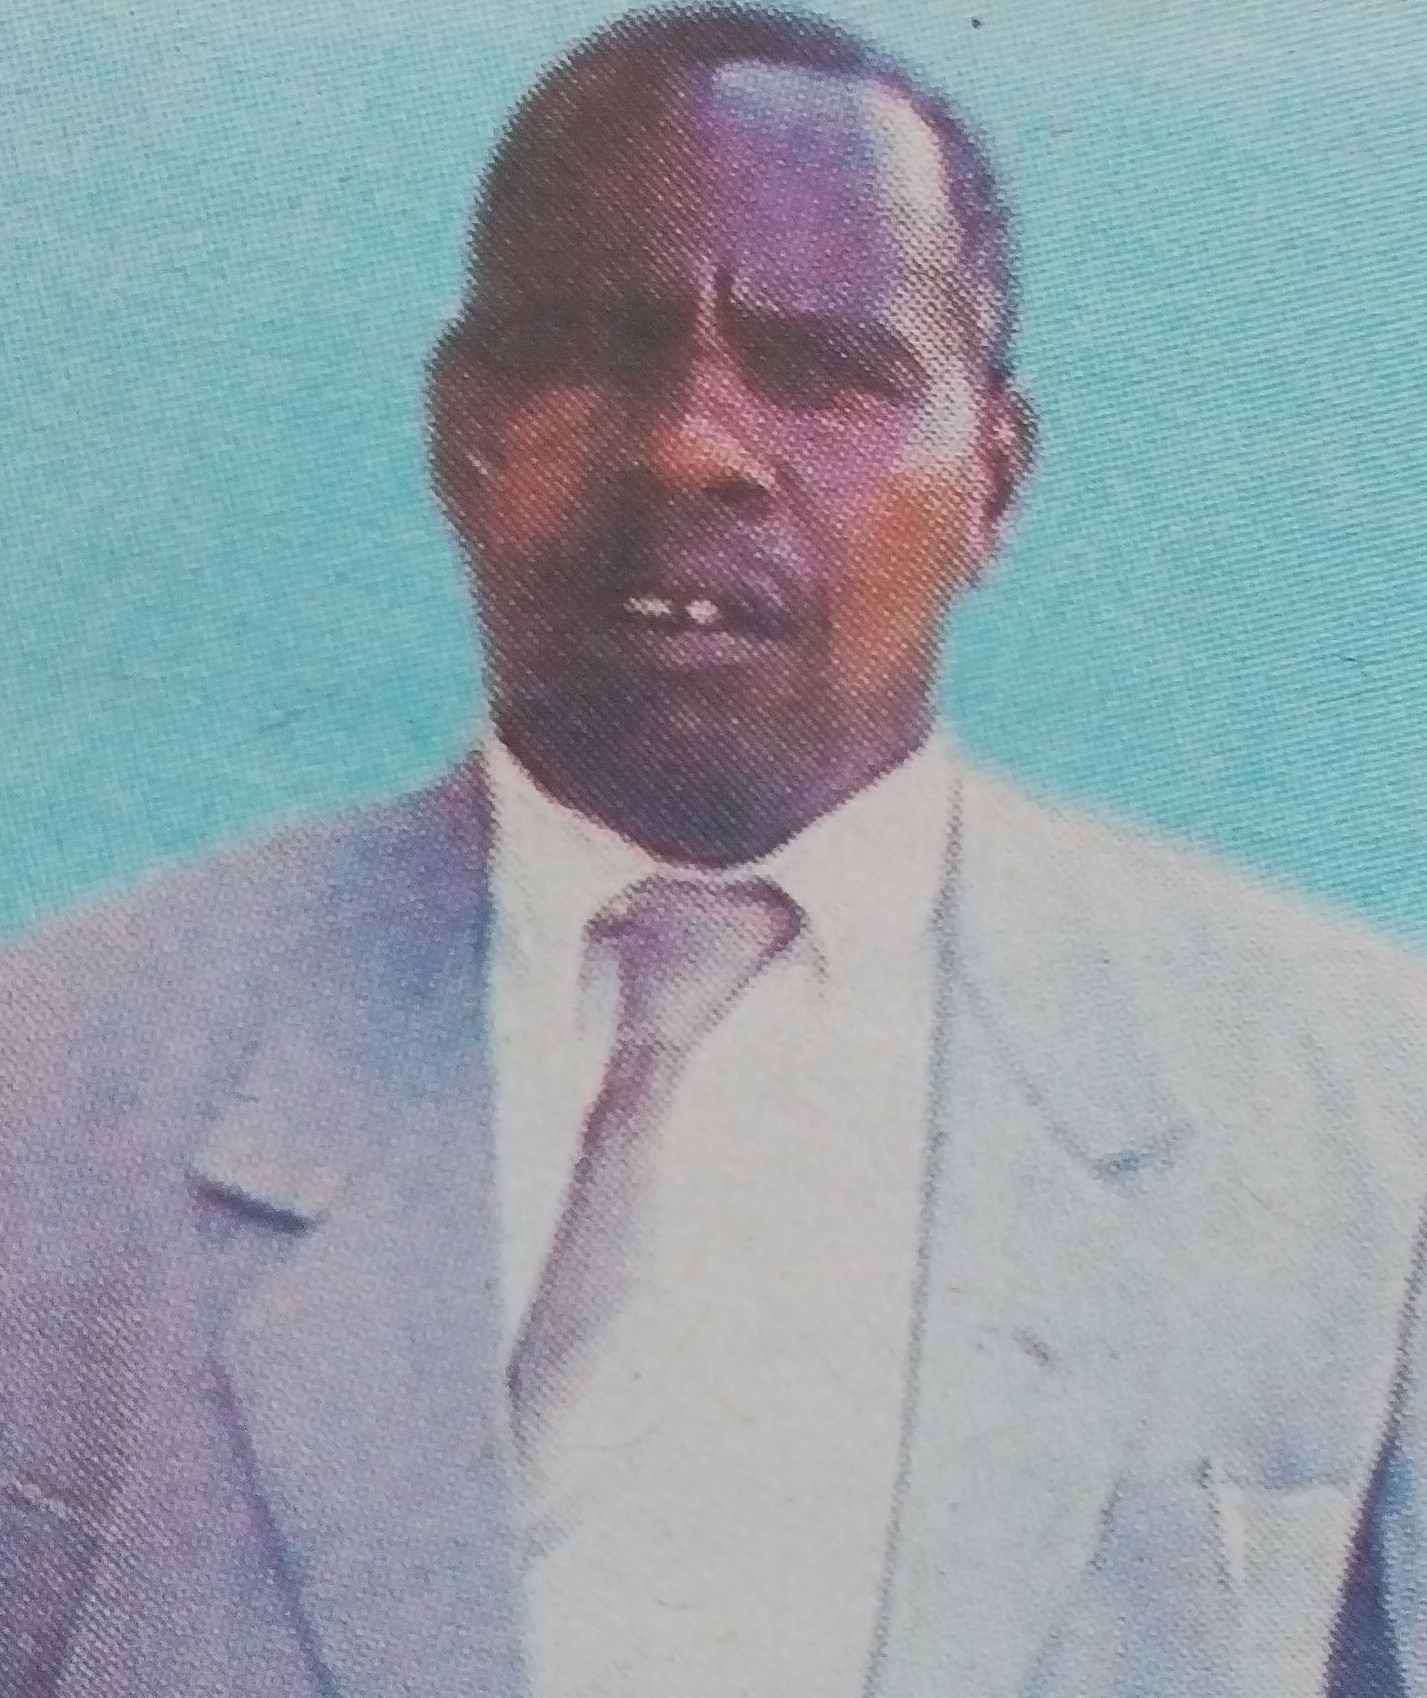 Obituary Image of Peter Kabuchwa Githinji